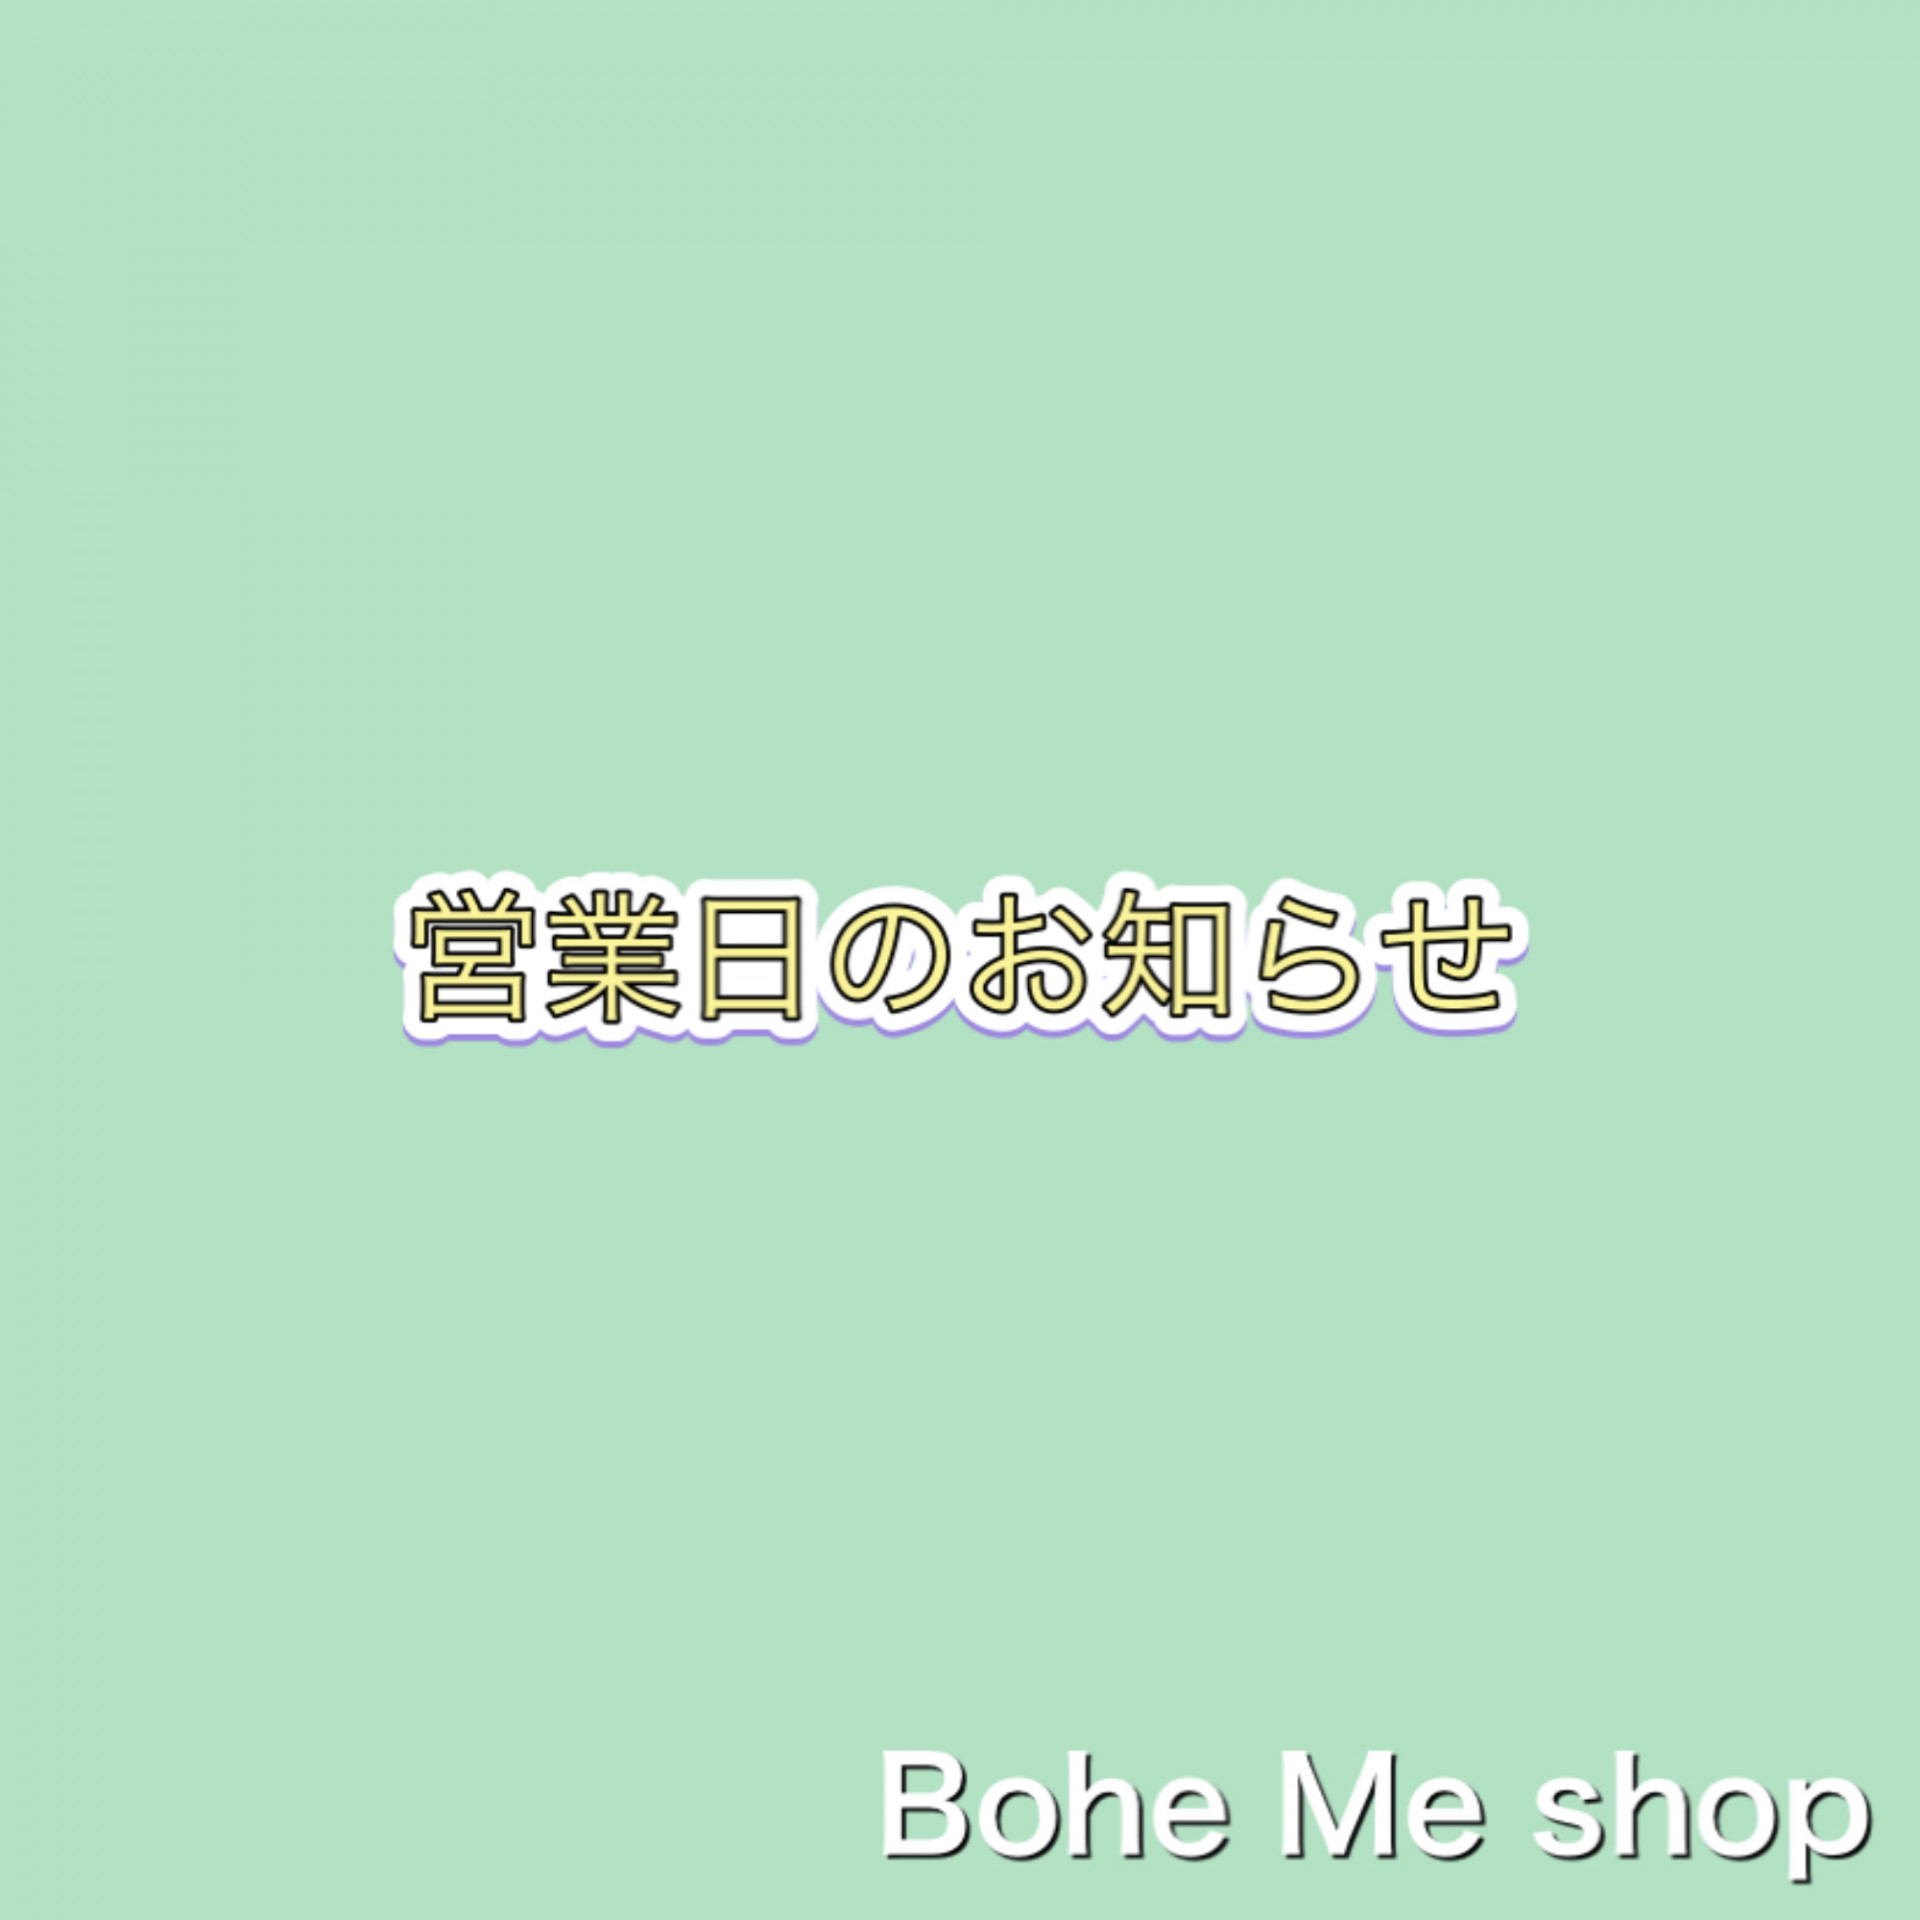 7月営業日【Bohe Me shop】